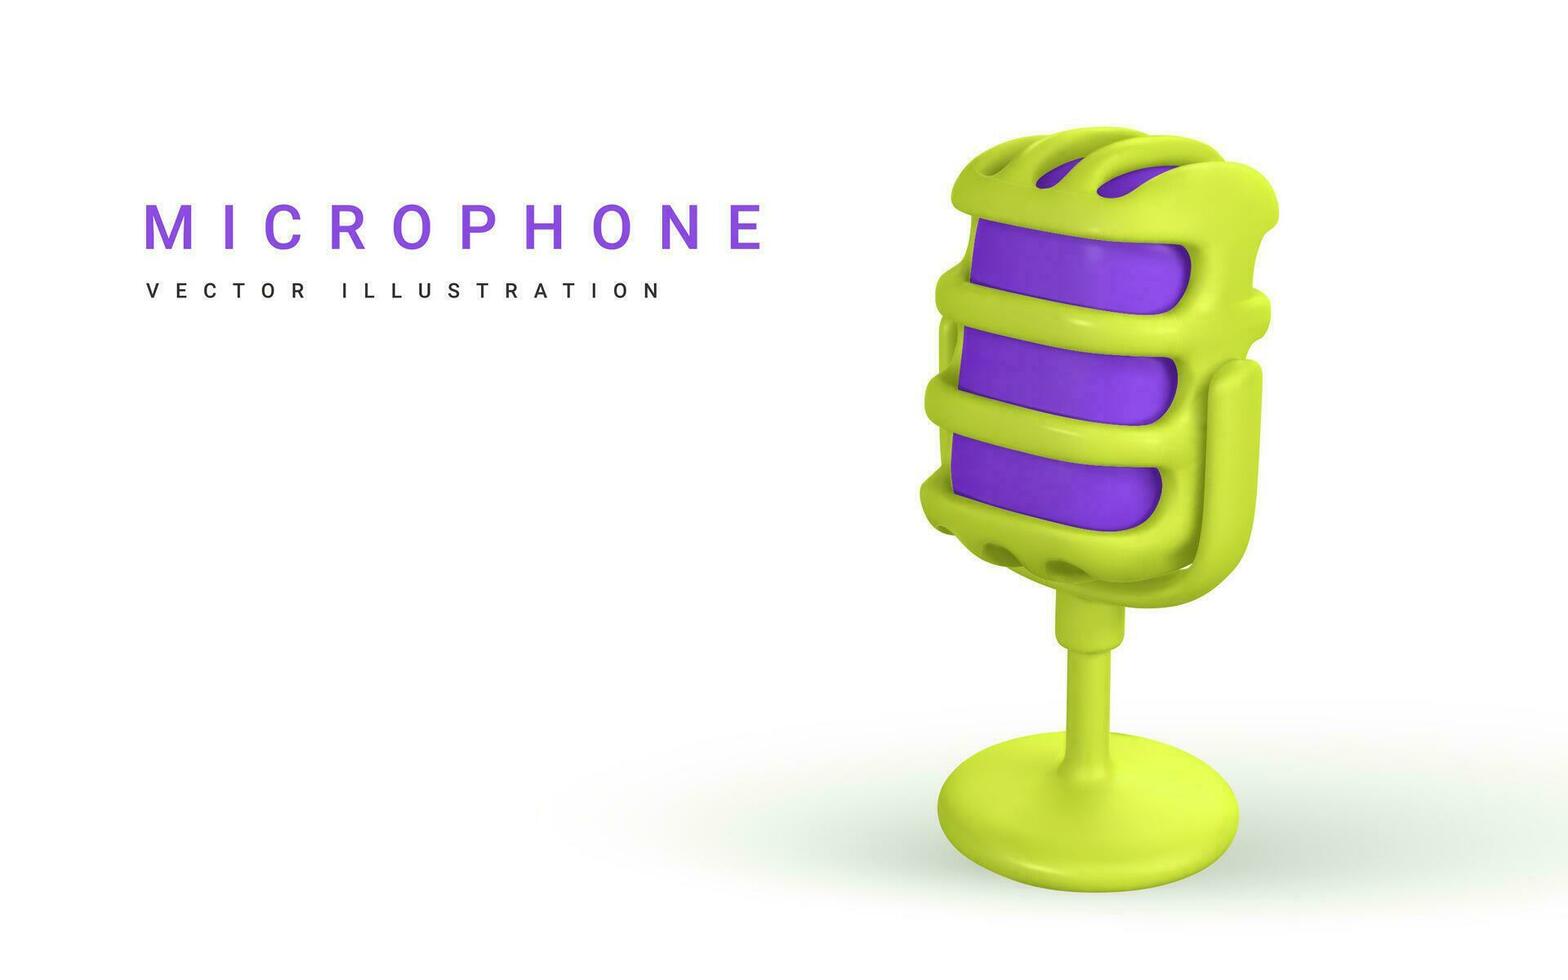 3d microfoon voor radio, muziek- of karaoke. audio uitrusting voor uitzendingen en Sollicitatiegesprekken in tekenfilm stijl. vector illustratie